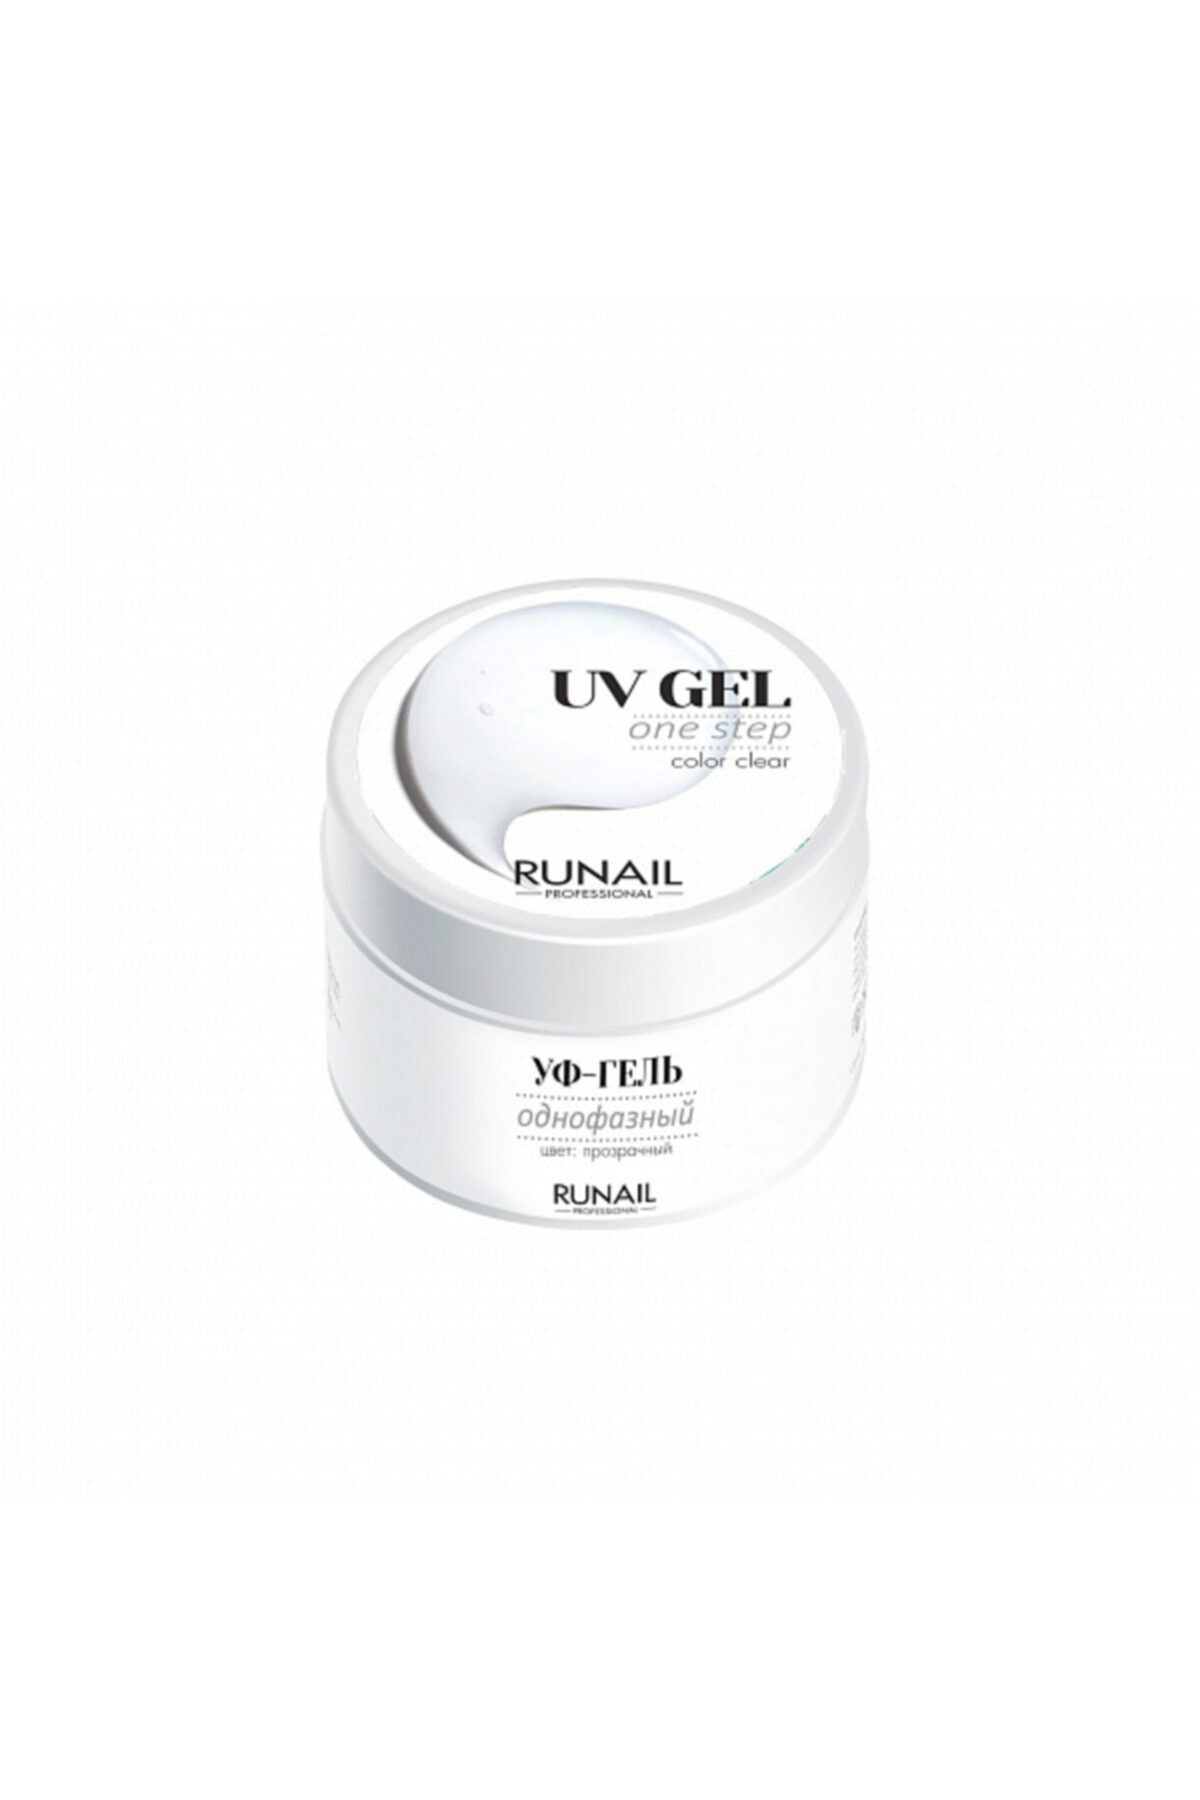 RUNAIL Professional Uv Jel 56 Gr. - One Step Clear ( Şeffaf ) QN8183